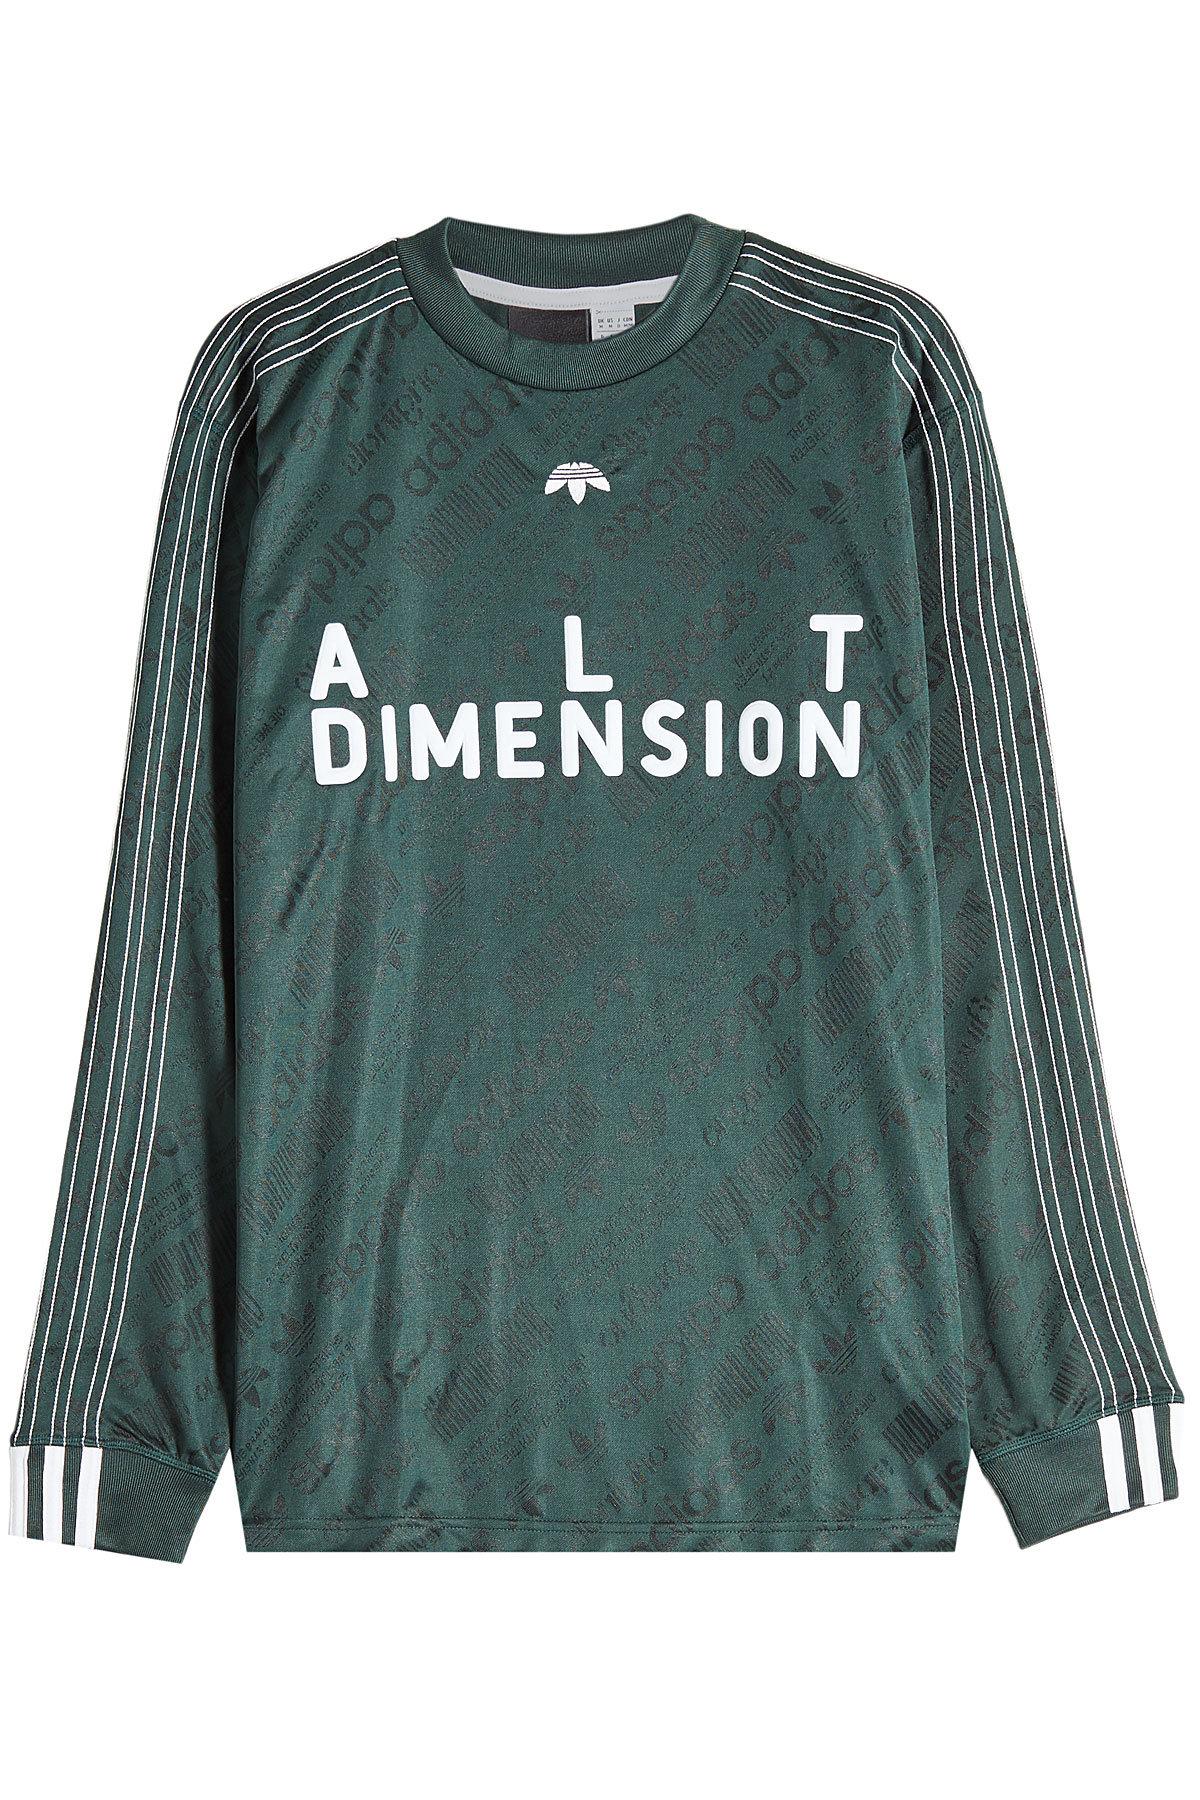 Adidas Originals By Alexander Wang Alt Dimension Long Sleeve Soccer Jersey  In Green | ModeSens